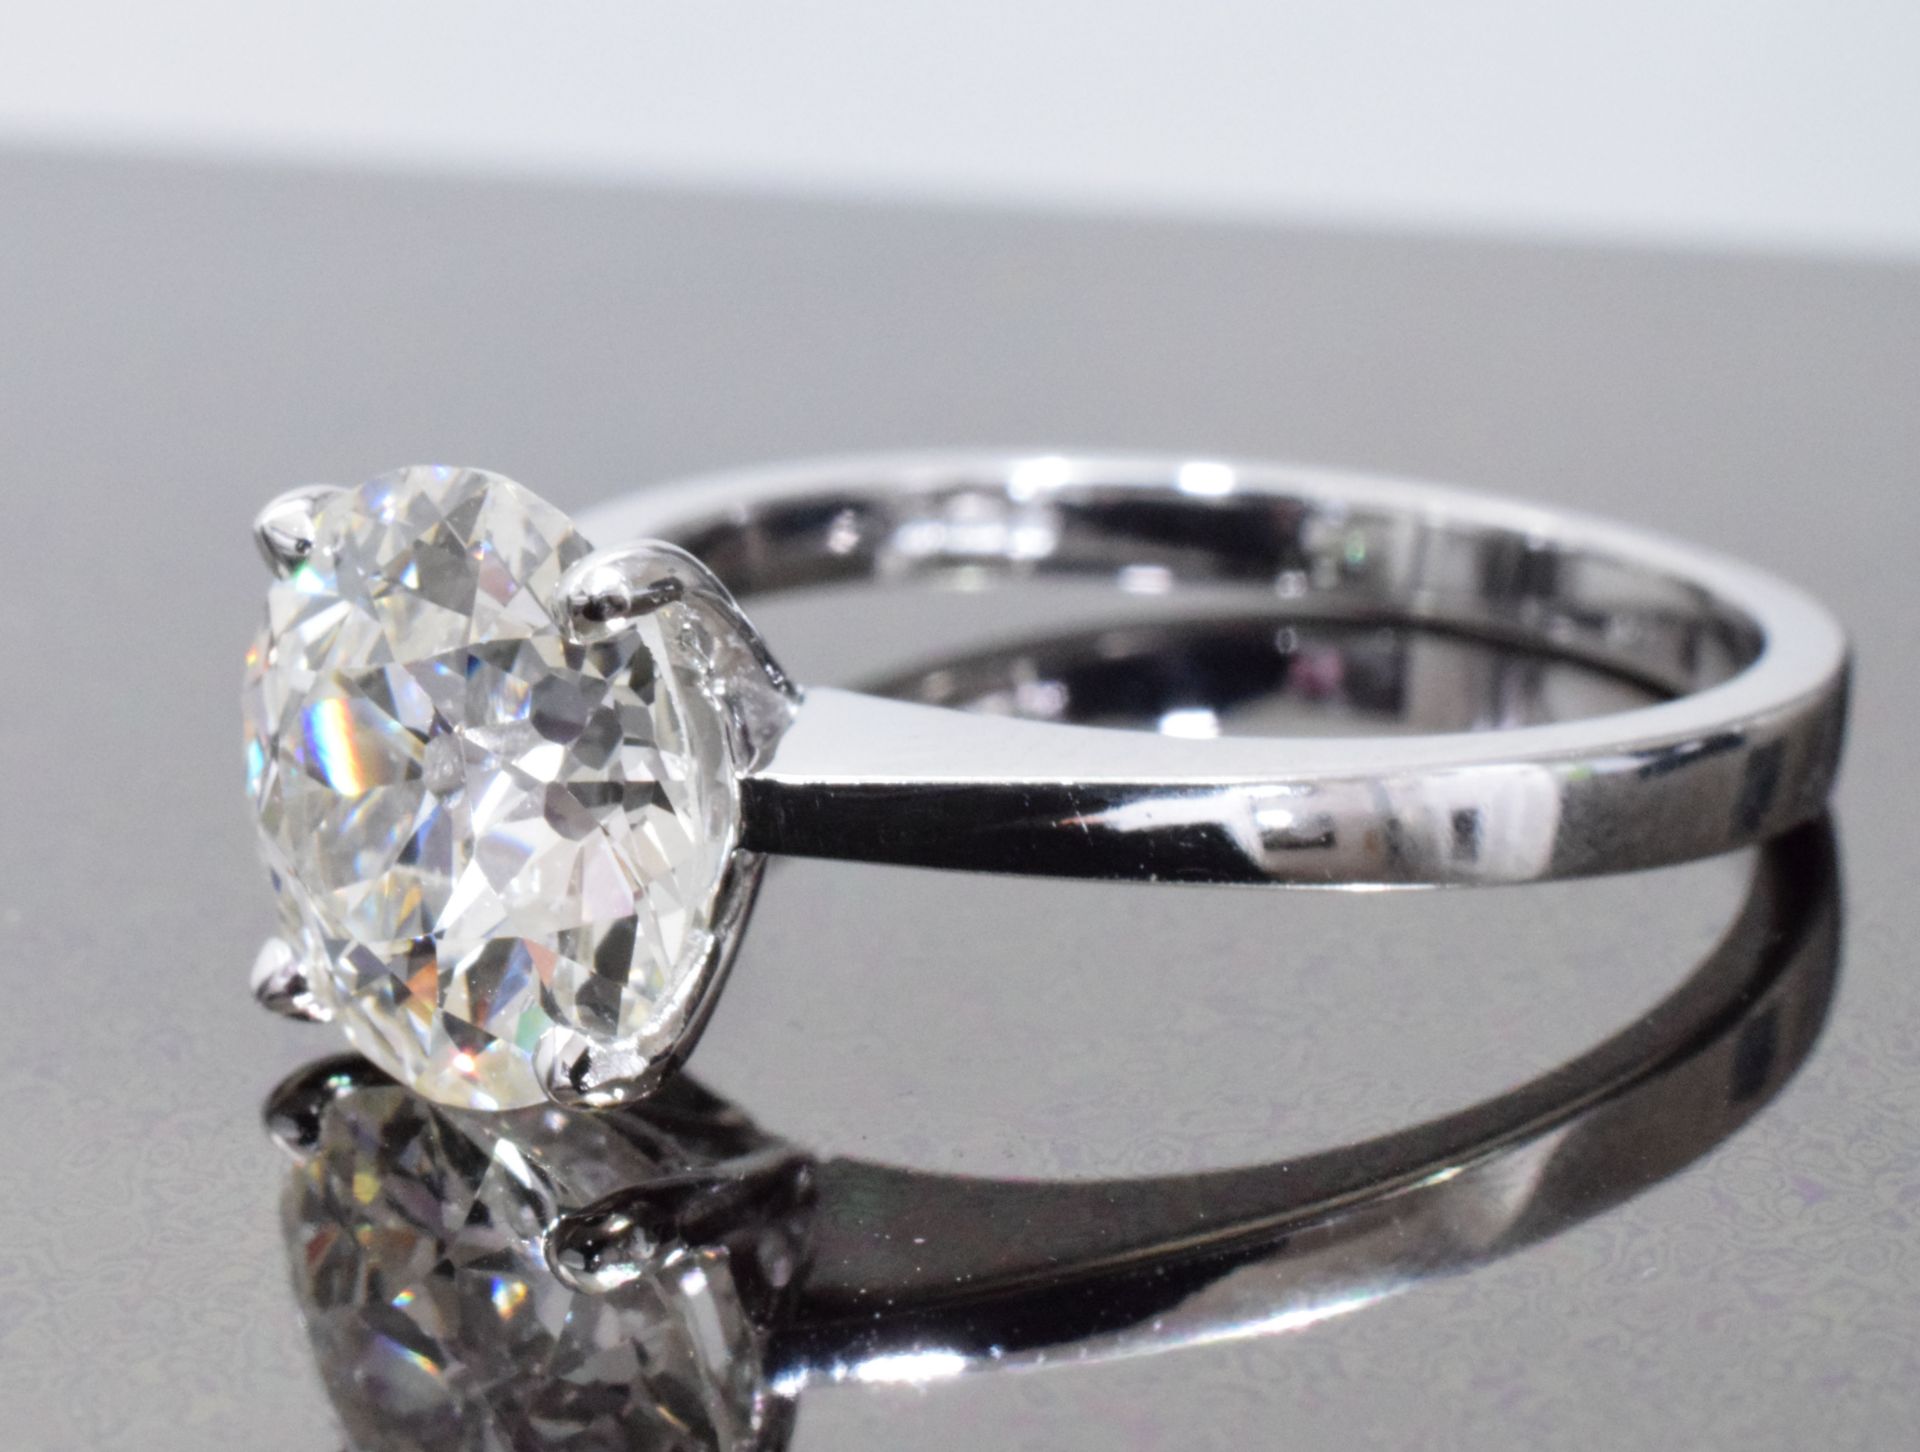 2.50 Carat Diamond Ring Set in White Gold - Image 4 of 6